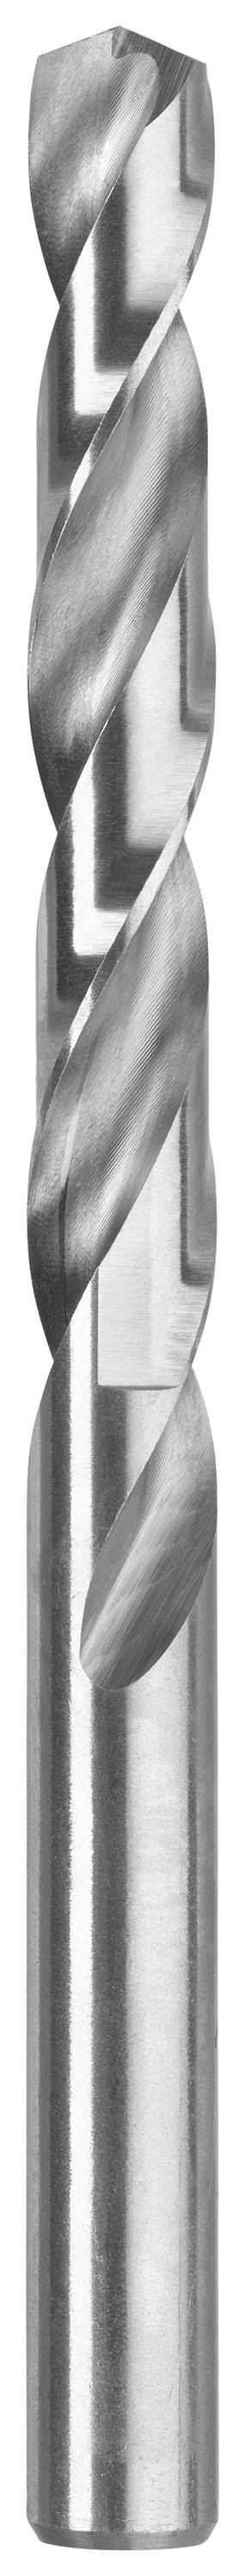 KWB 206545 Metall-Spiralbohrer 4.5 mm 1 Stück (206545)